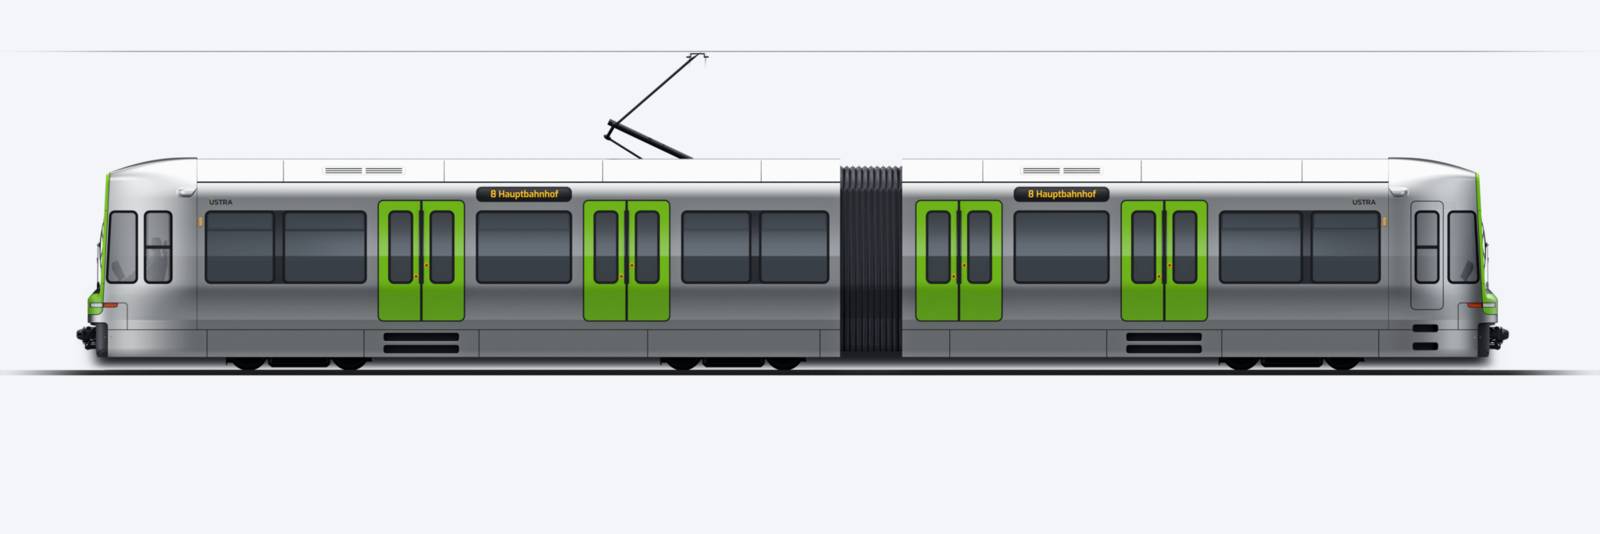 Grafik eines Stadtbahnwagens